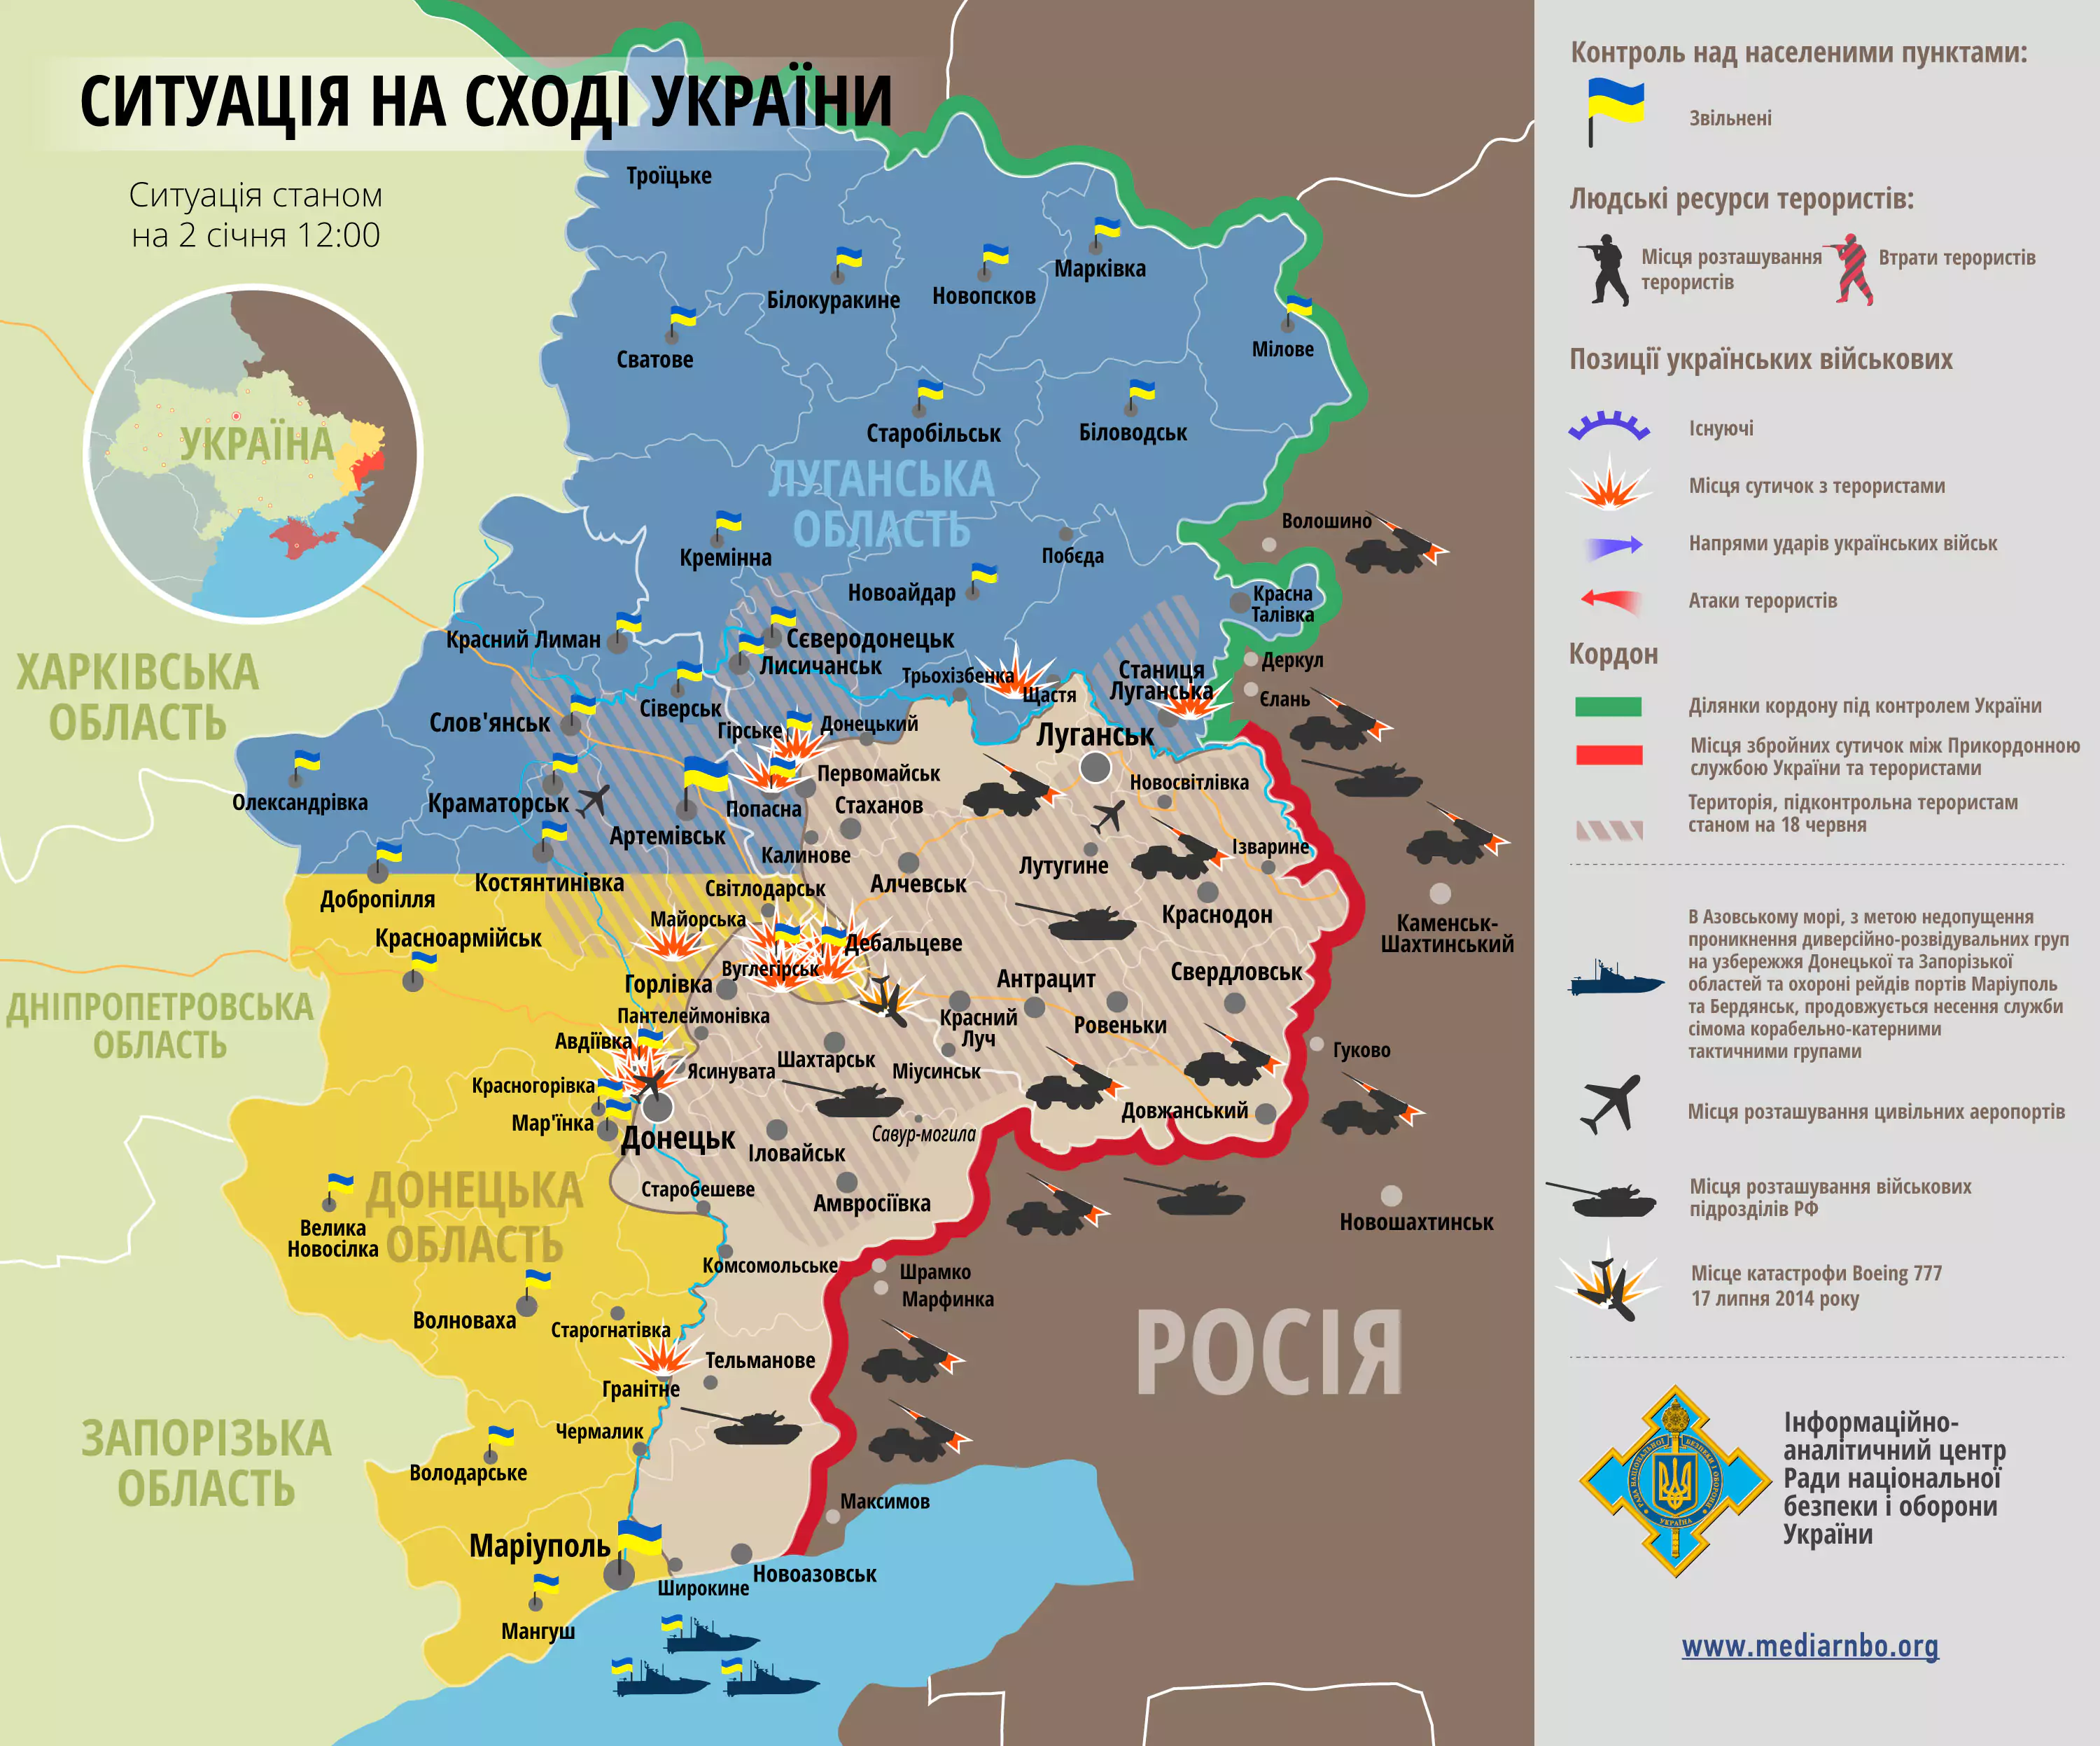 Бойовики здійснюють поодинокі збройні провокації у Маріуполі, Донецьку, Дебальцевому